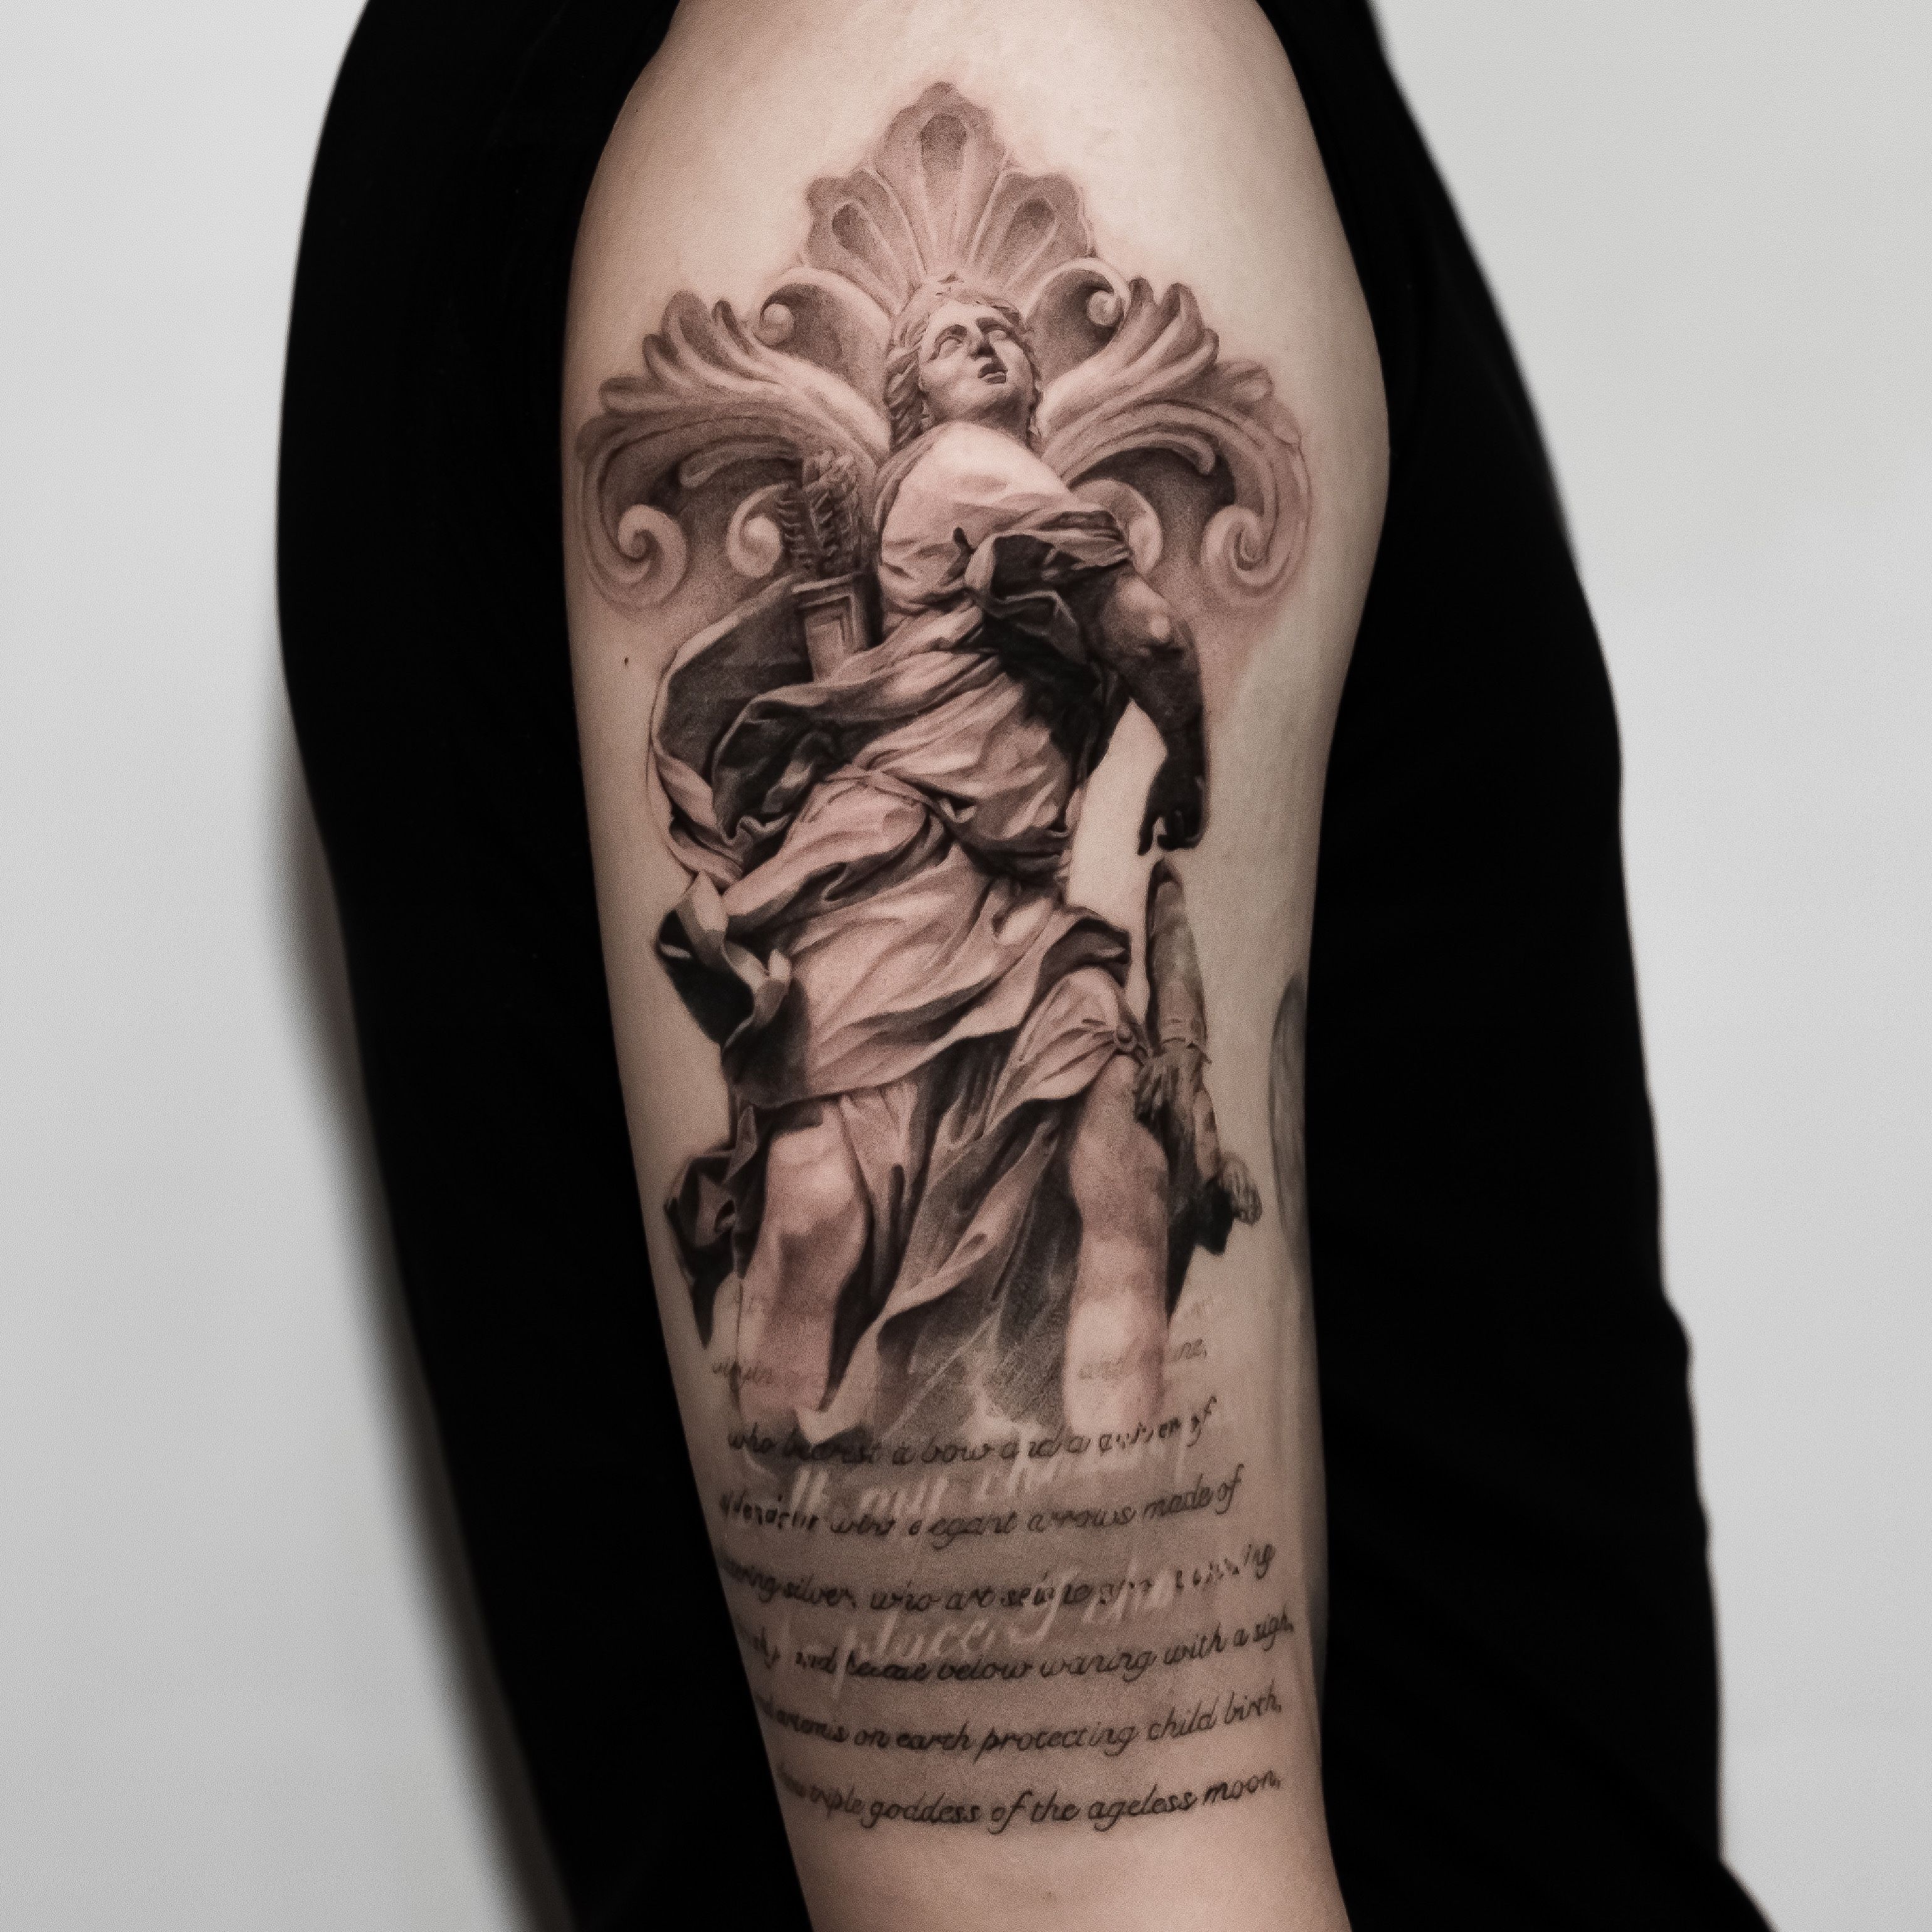 Artemis tattoo design